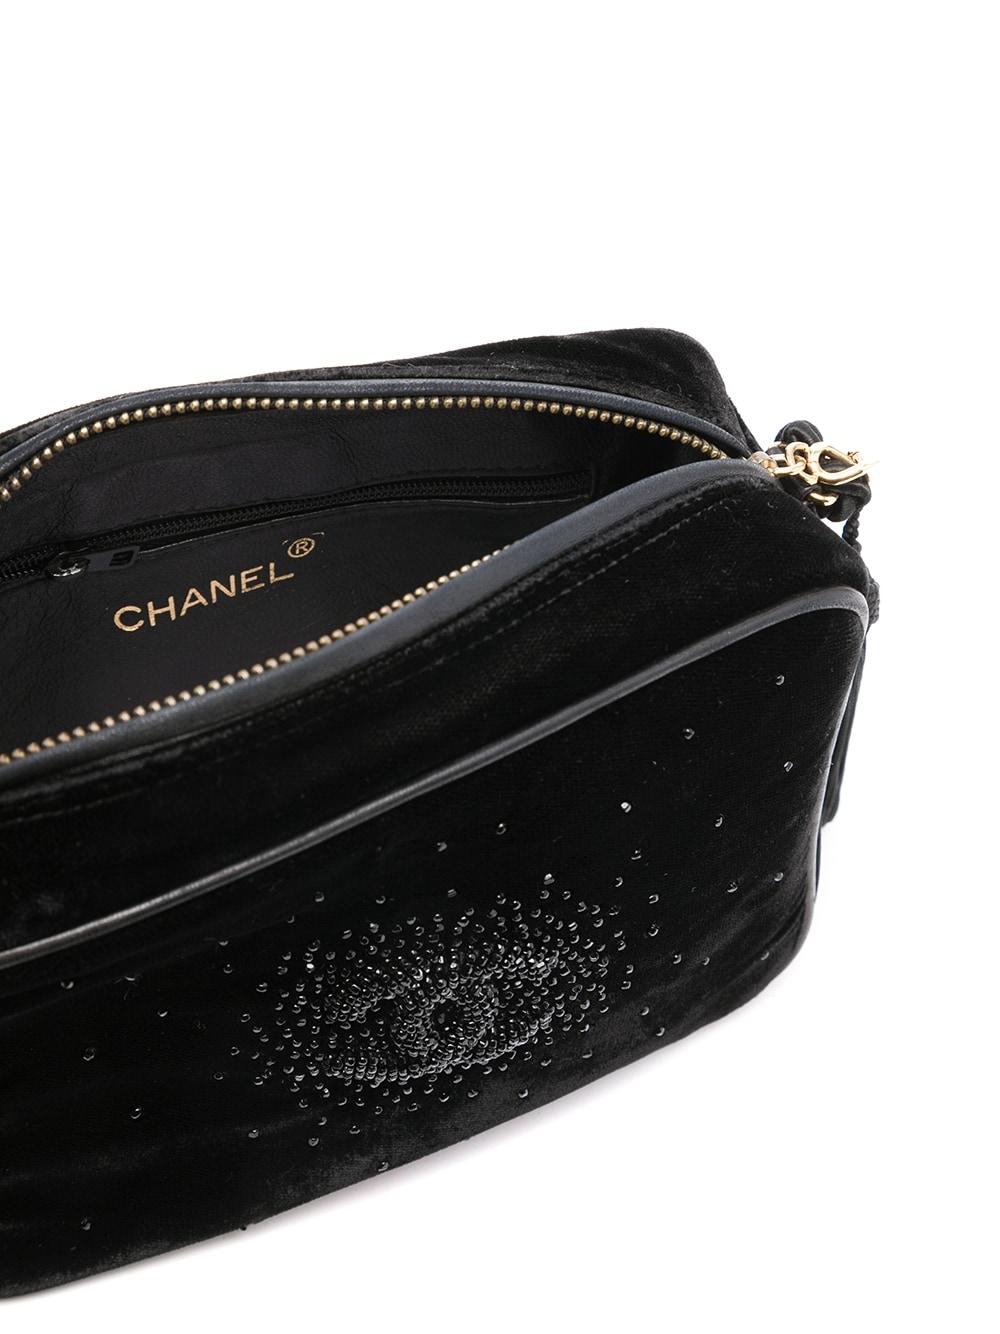 Chanel So Black Rare Vintage 1989 Velvet Strass Beaded Tassel Small Camera Bag For Sale 6